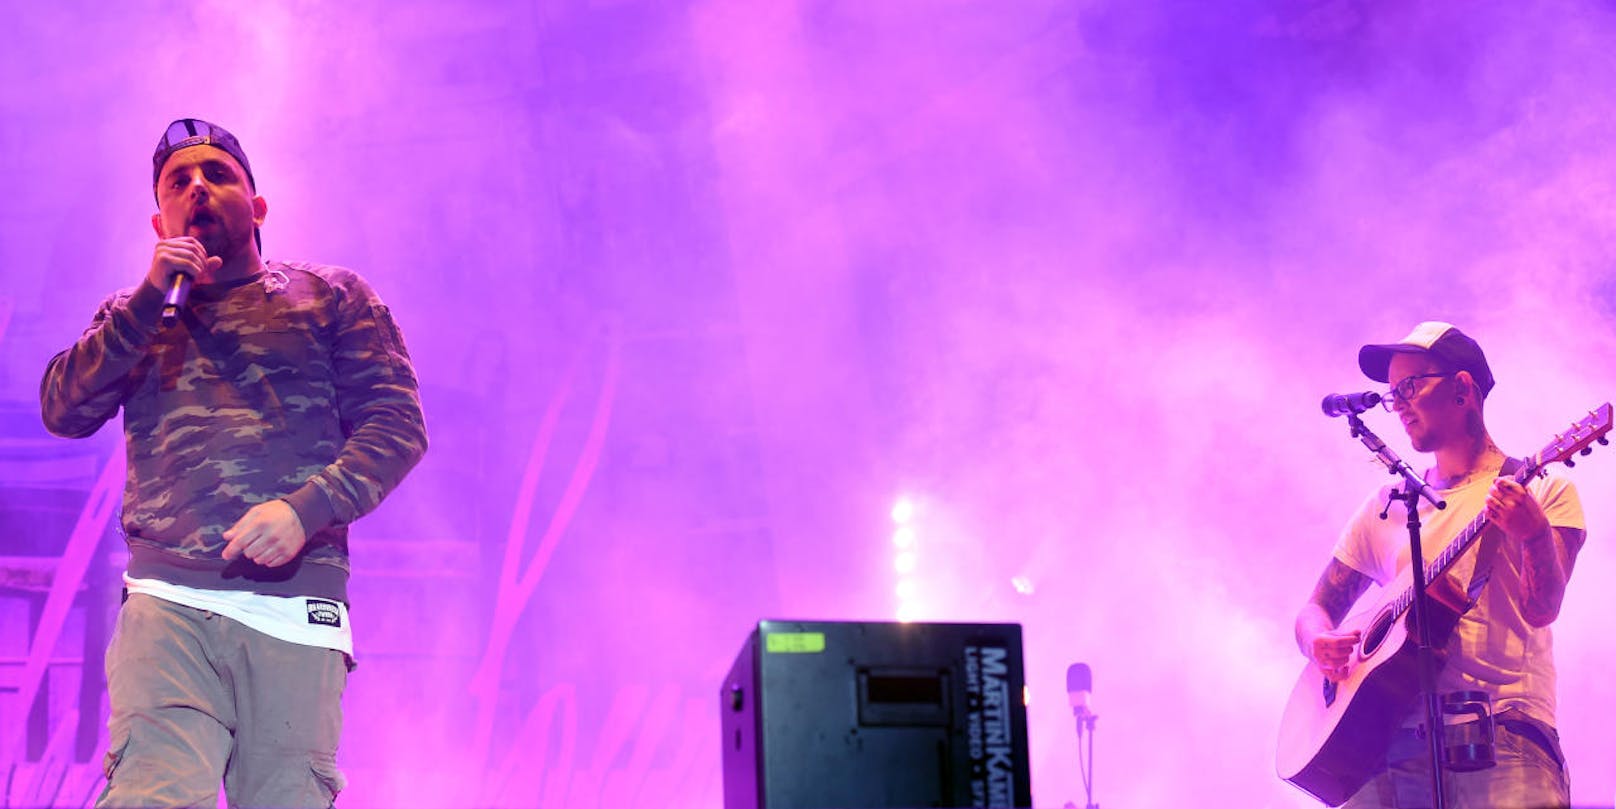 v.l.: Christopher Seiler und Bernhard Speer von der Band "Seiler und Speer" während eines Konzertes auf der "Blue Stage" im Rahmen des "Nova Rock 2018" Festivals am Donnerstag, 14. Juni 2018